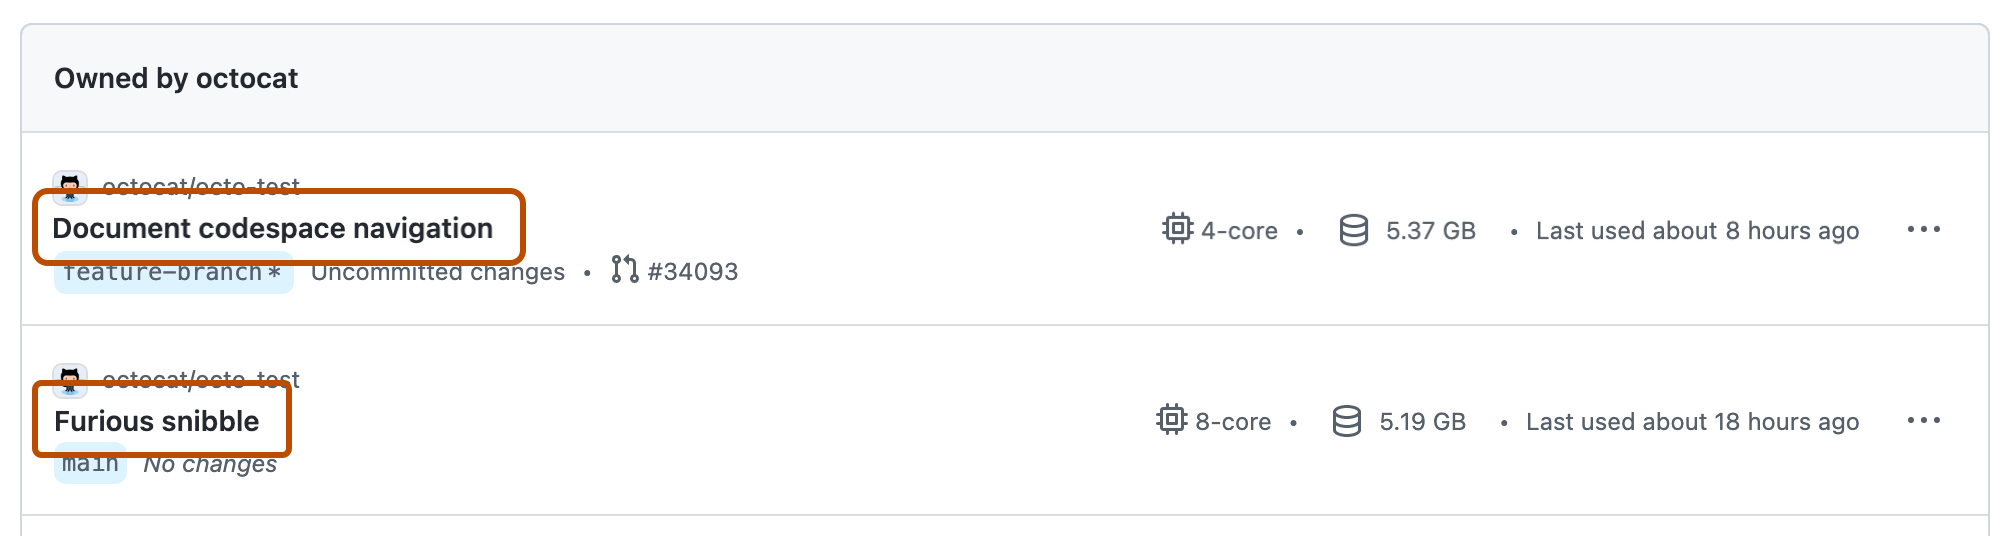 Captura de pantalla de una lista de dos codespaces en GitHub. Los nombres de los codespaces se resaltan con contornos de color naranja oscuro.